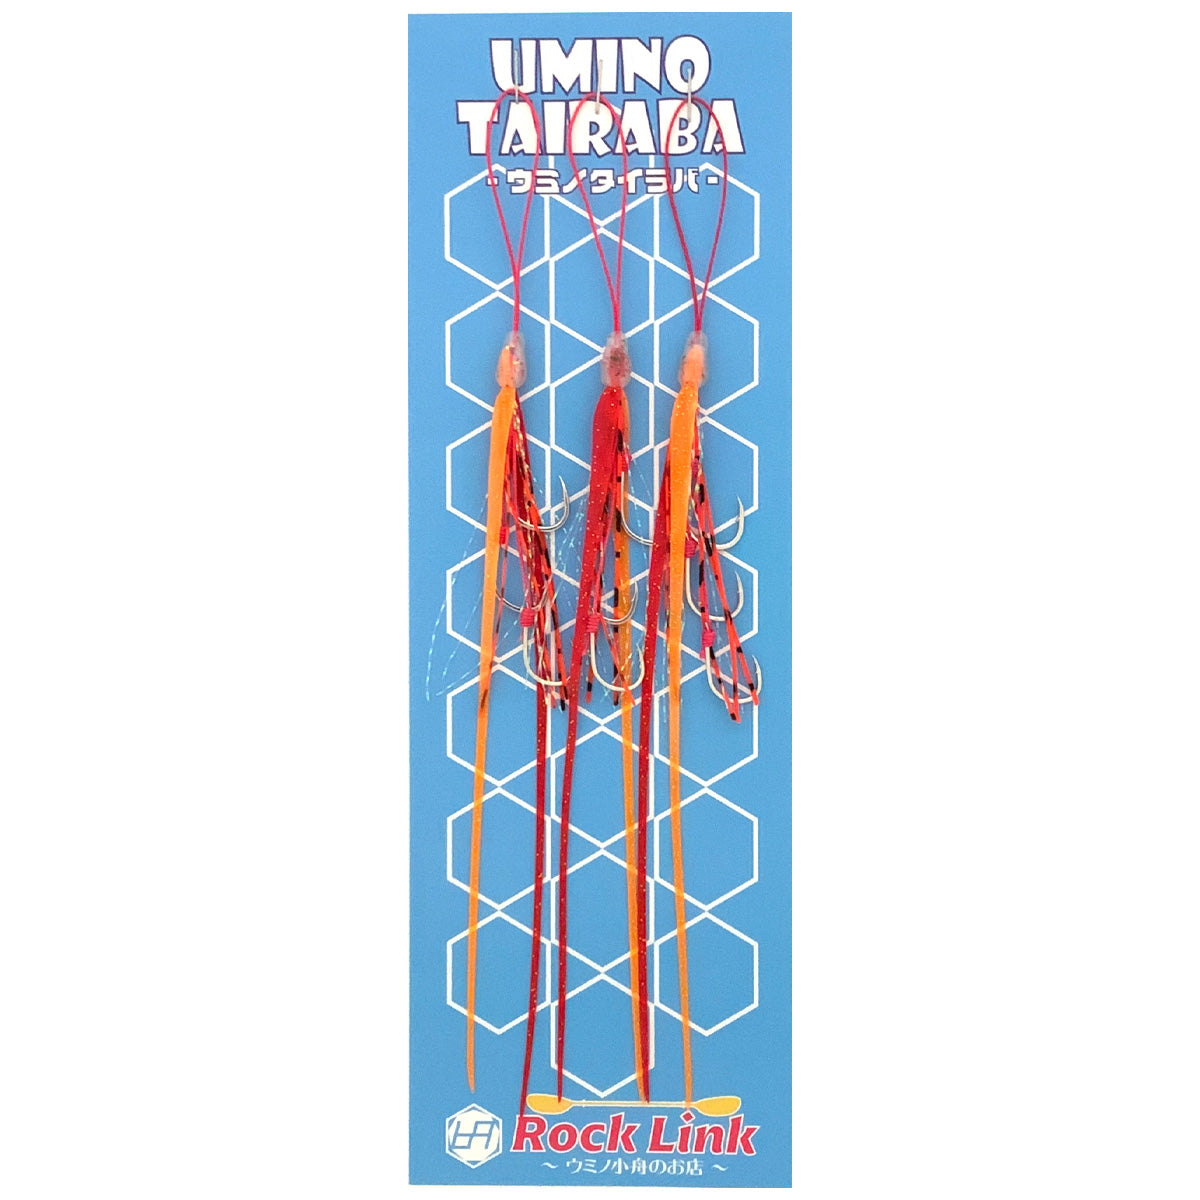 UMINO (ウミノ) タイラバ ビビ 微波動ネクタイ 超極細ツインストレート 3本フック 3セット入